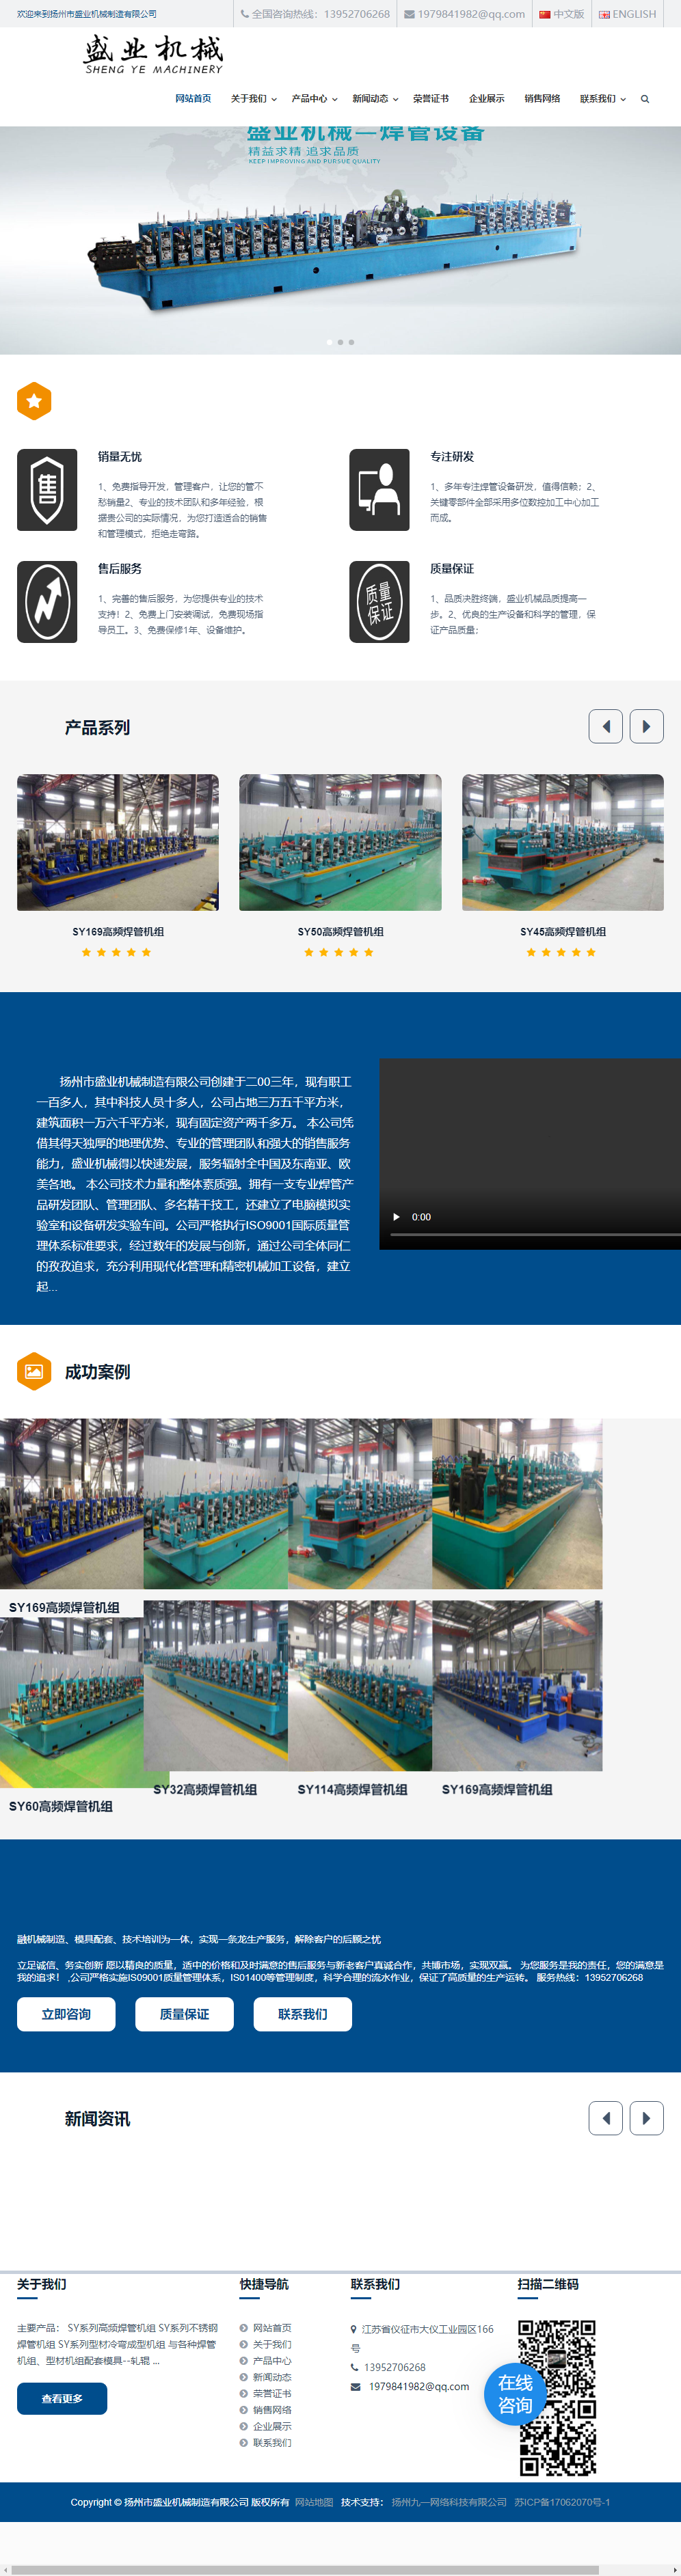 扬州市盛业机械制造有限公司网站案例